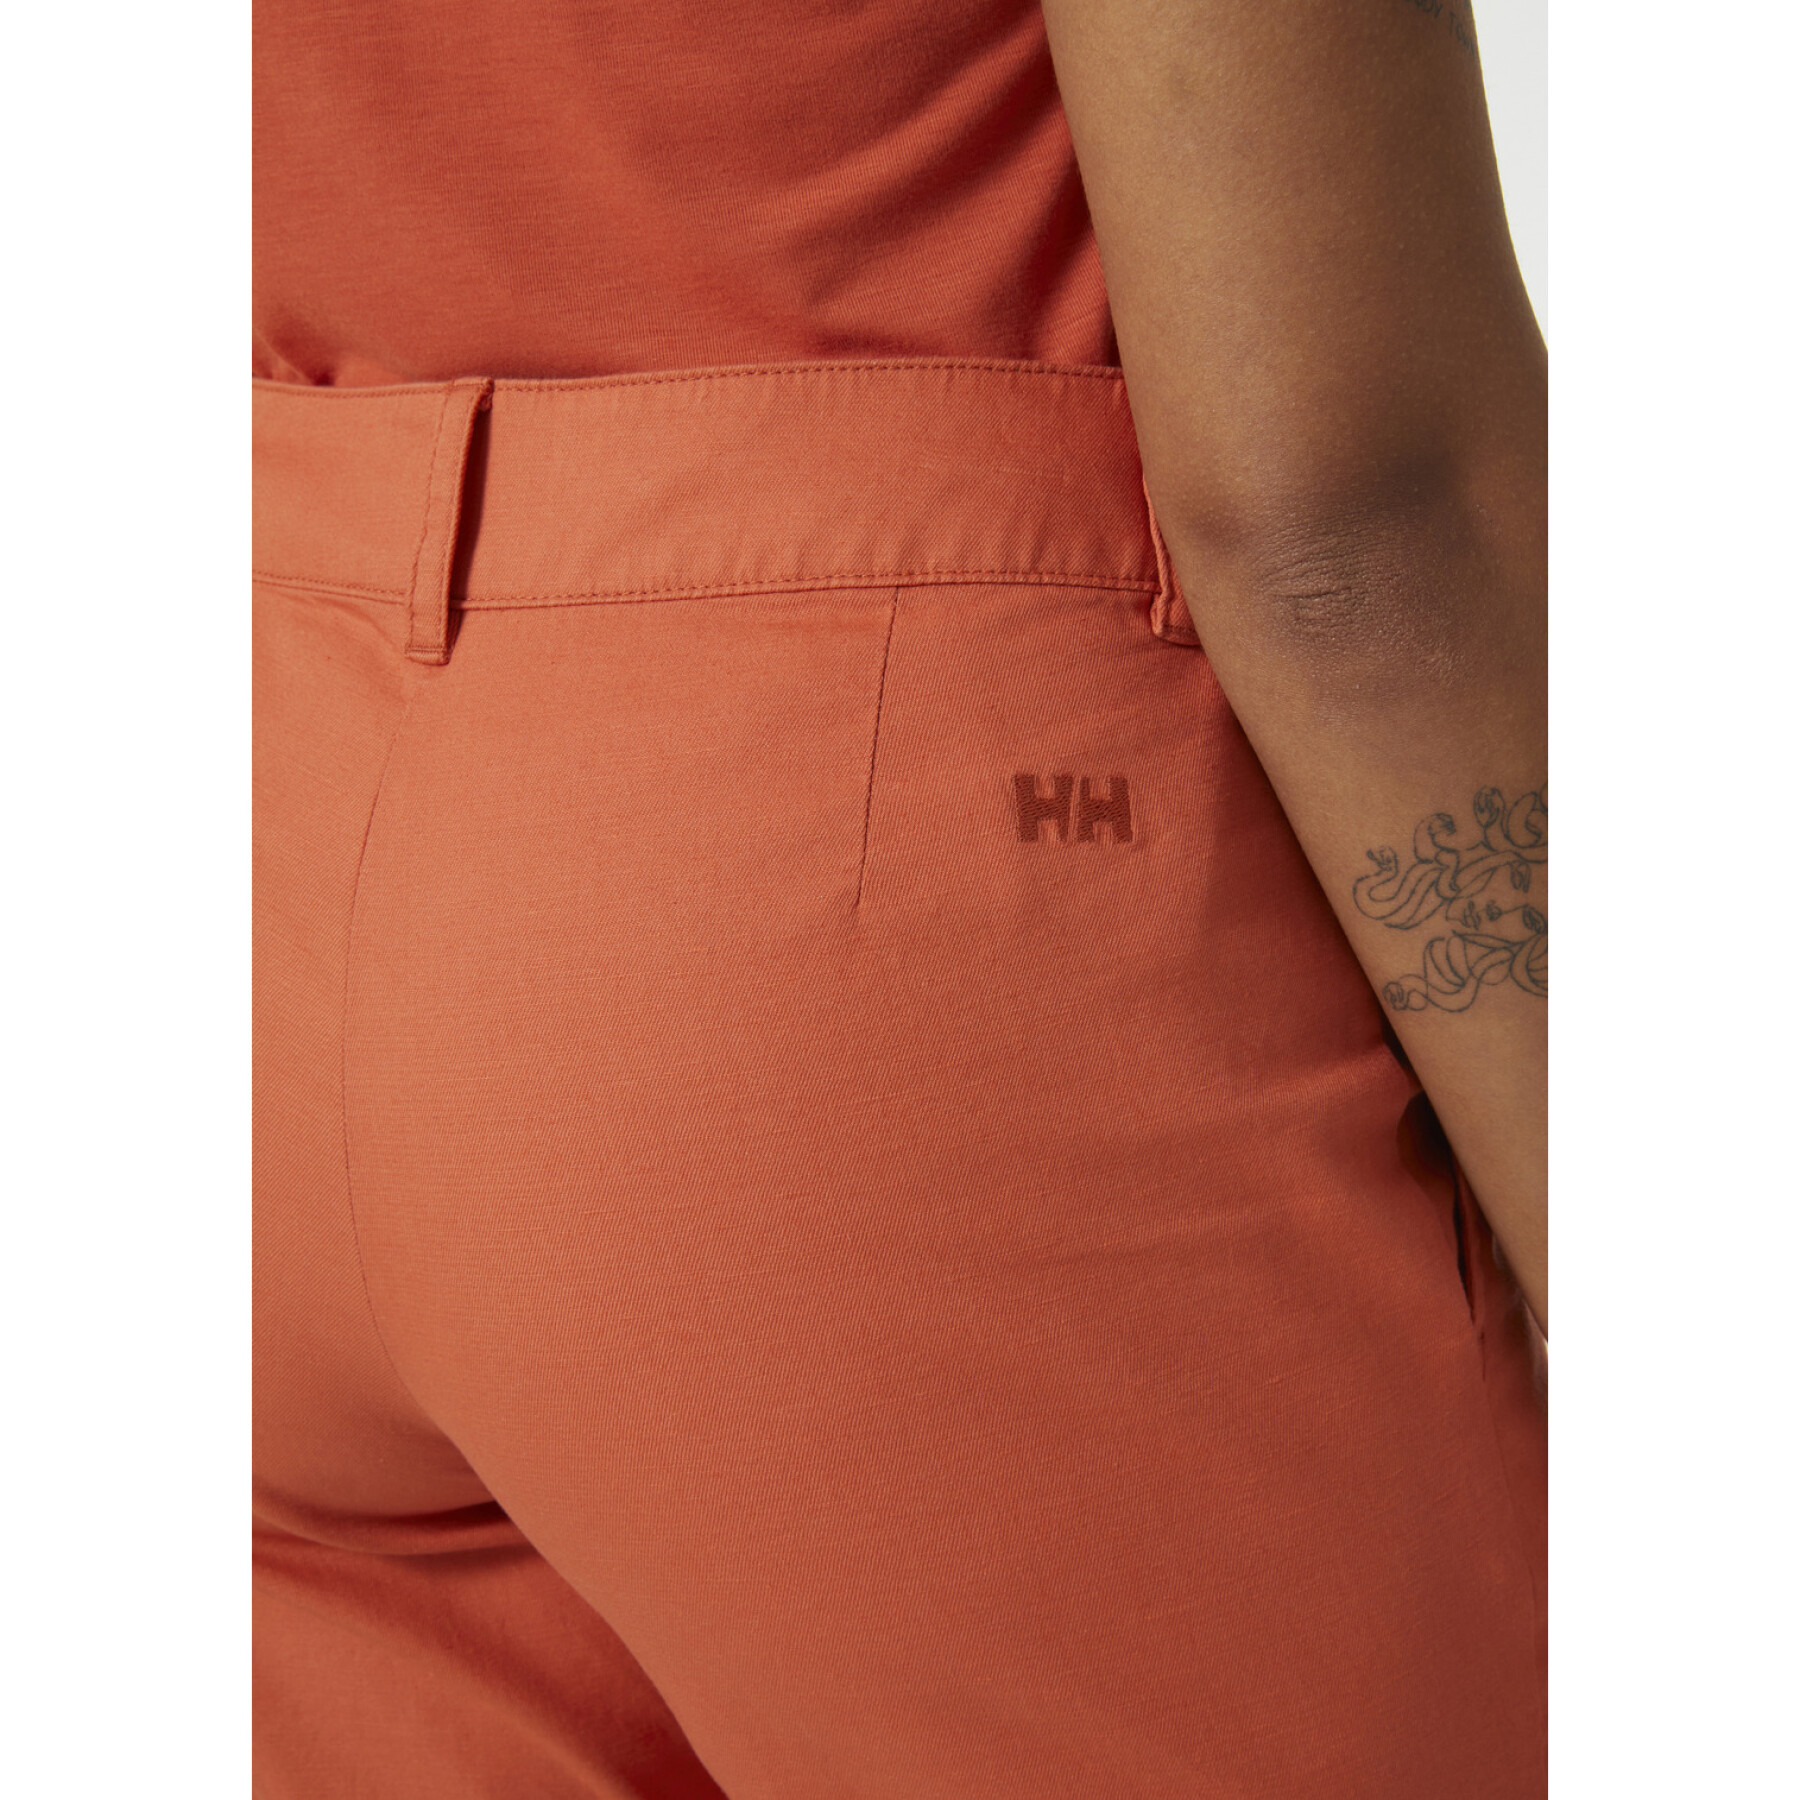 Pantalón corto de mujer Helly Hansen Pier